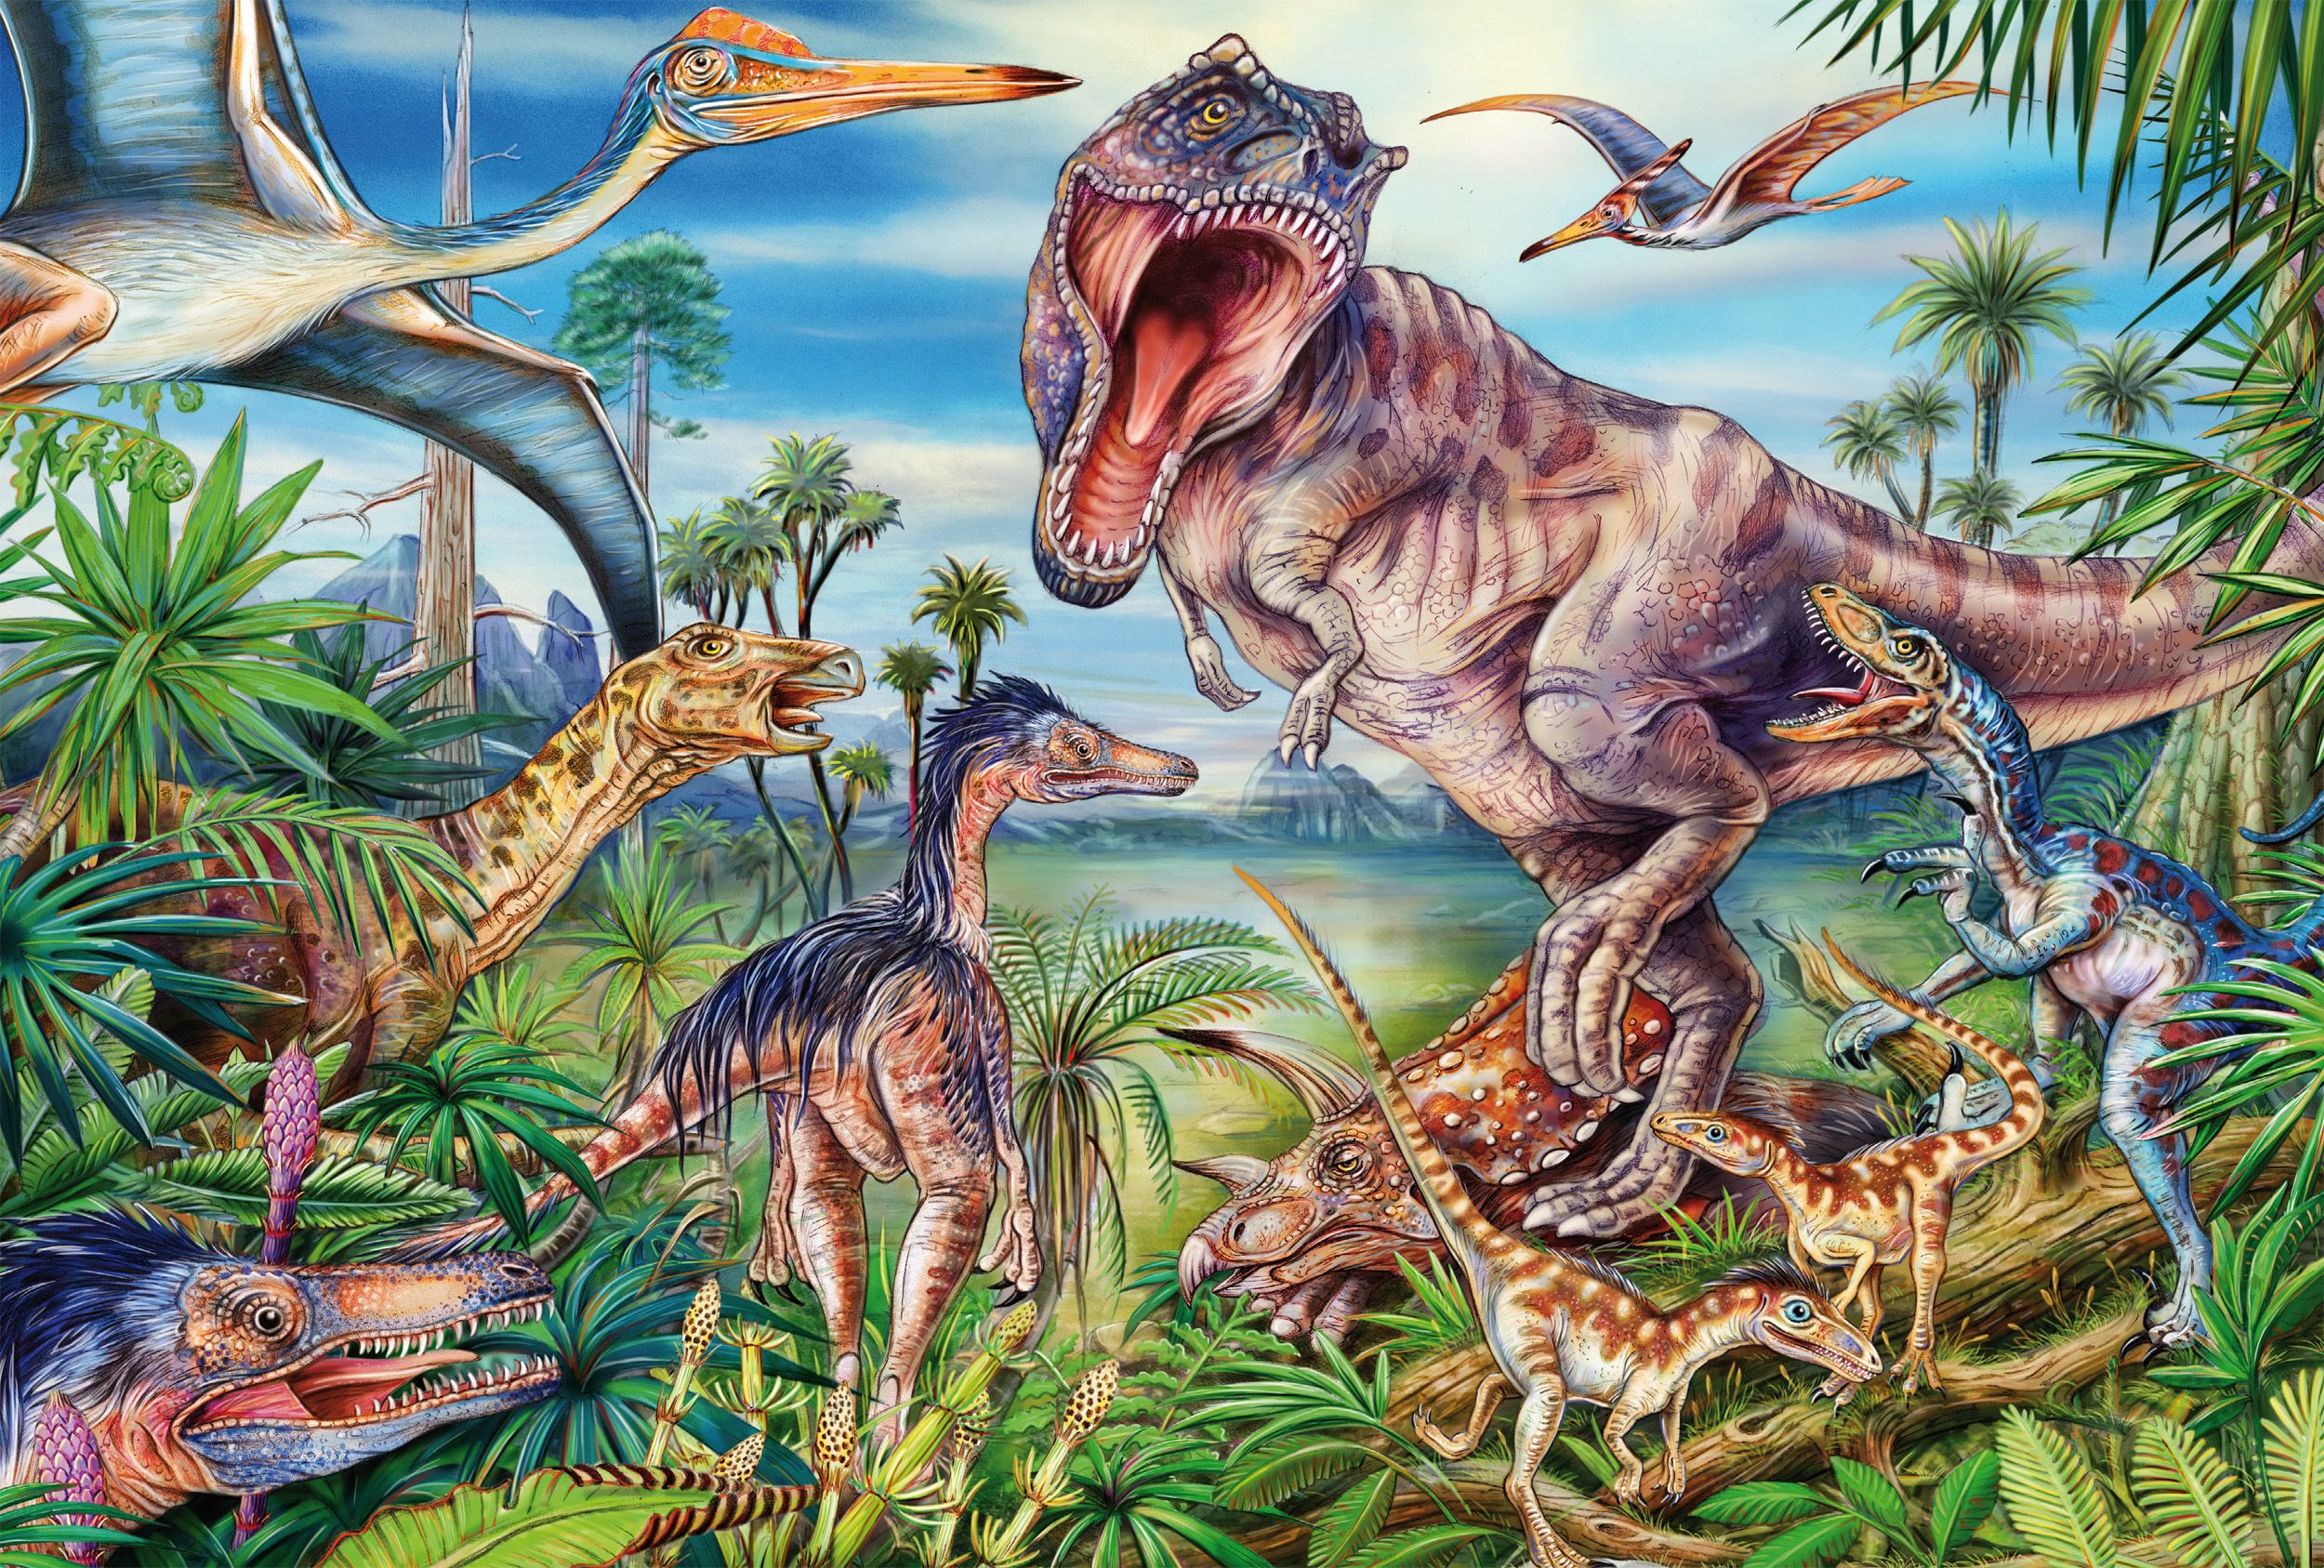 Bei den Dinosauriern | Kinderpuzzle 60 Teile